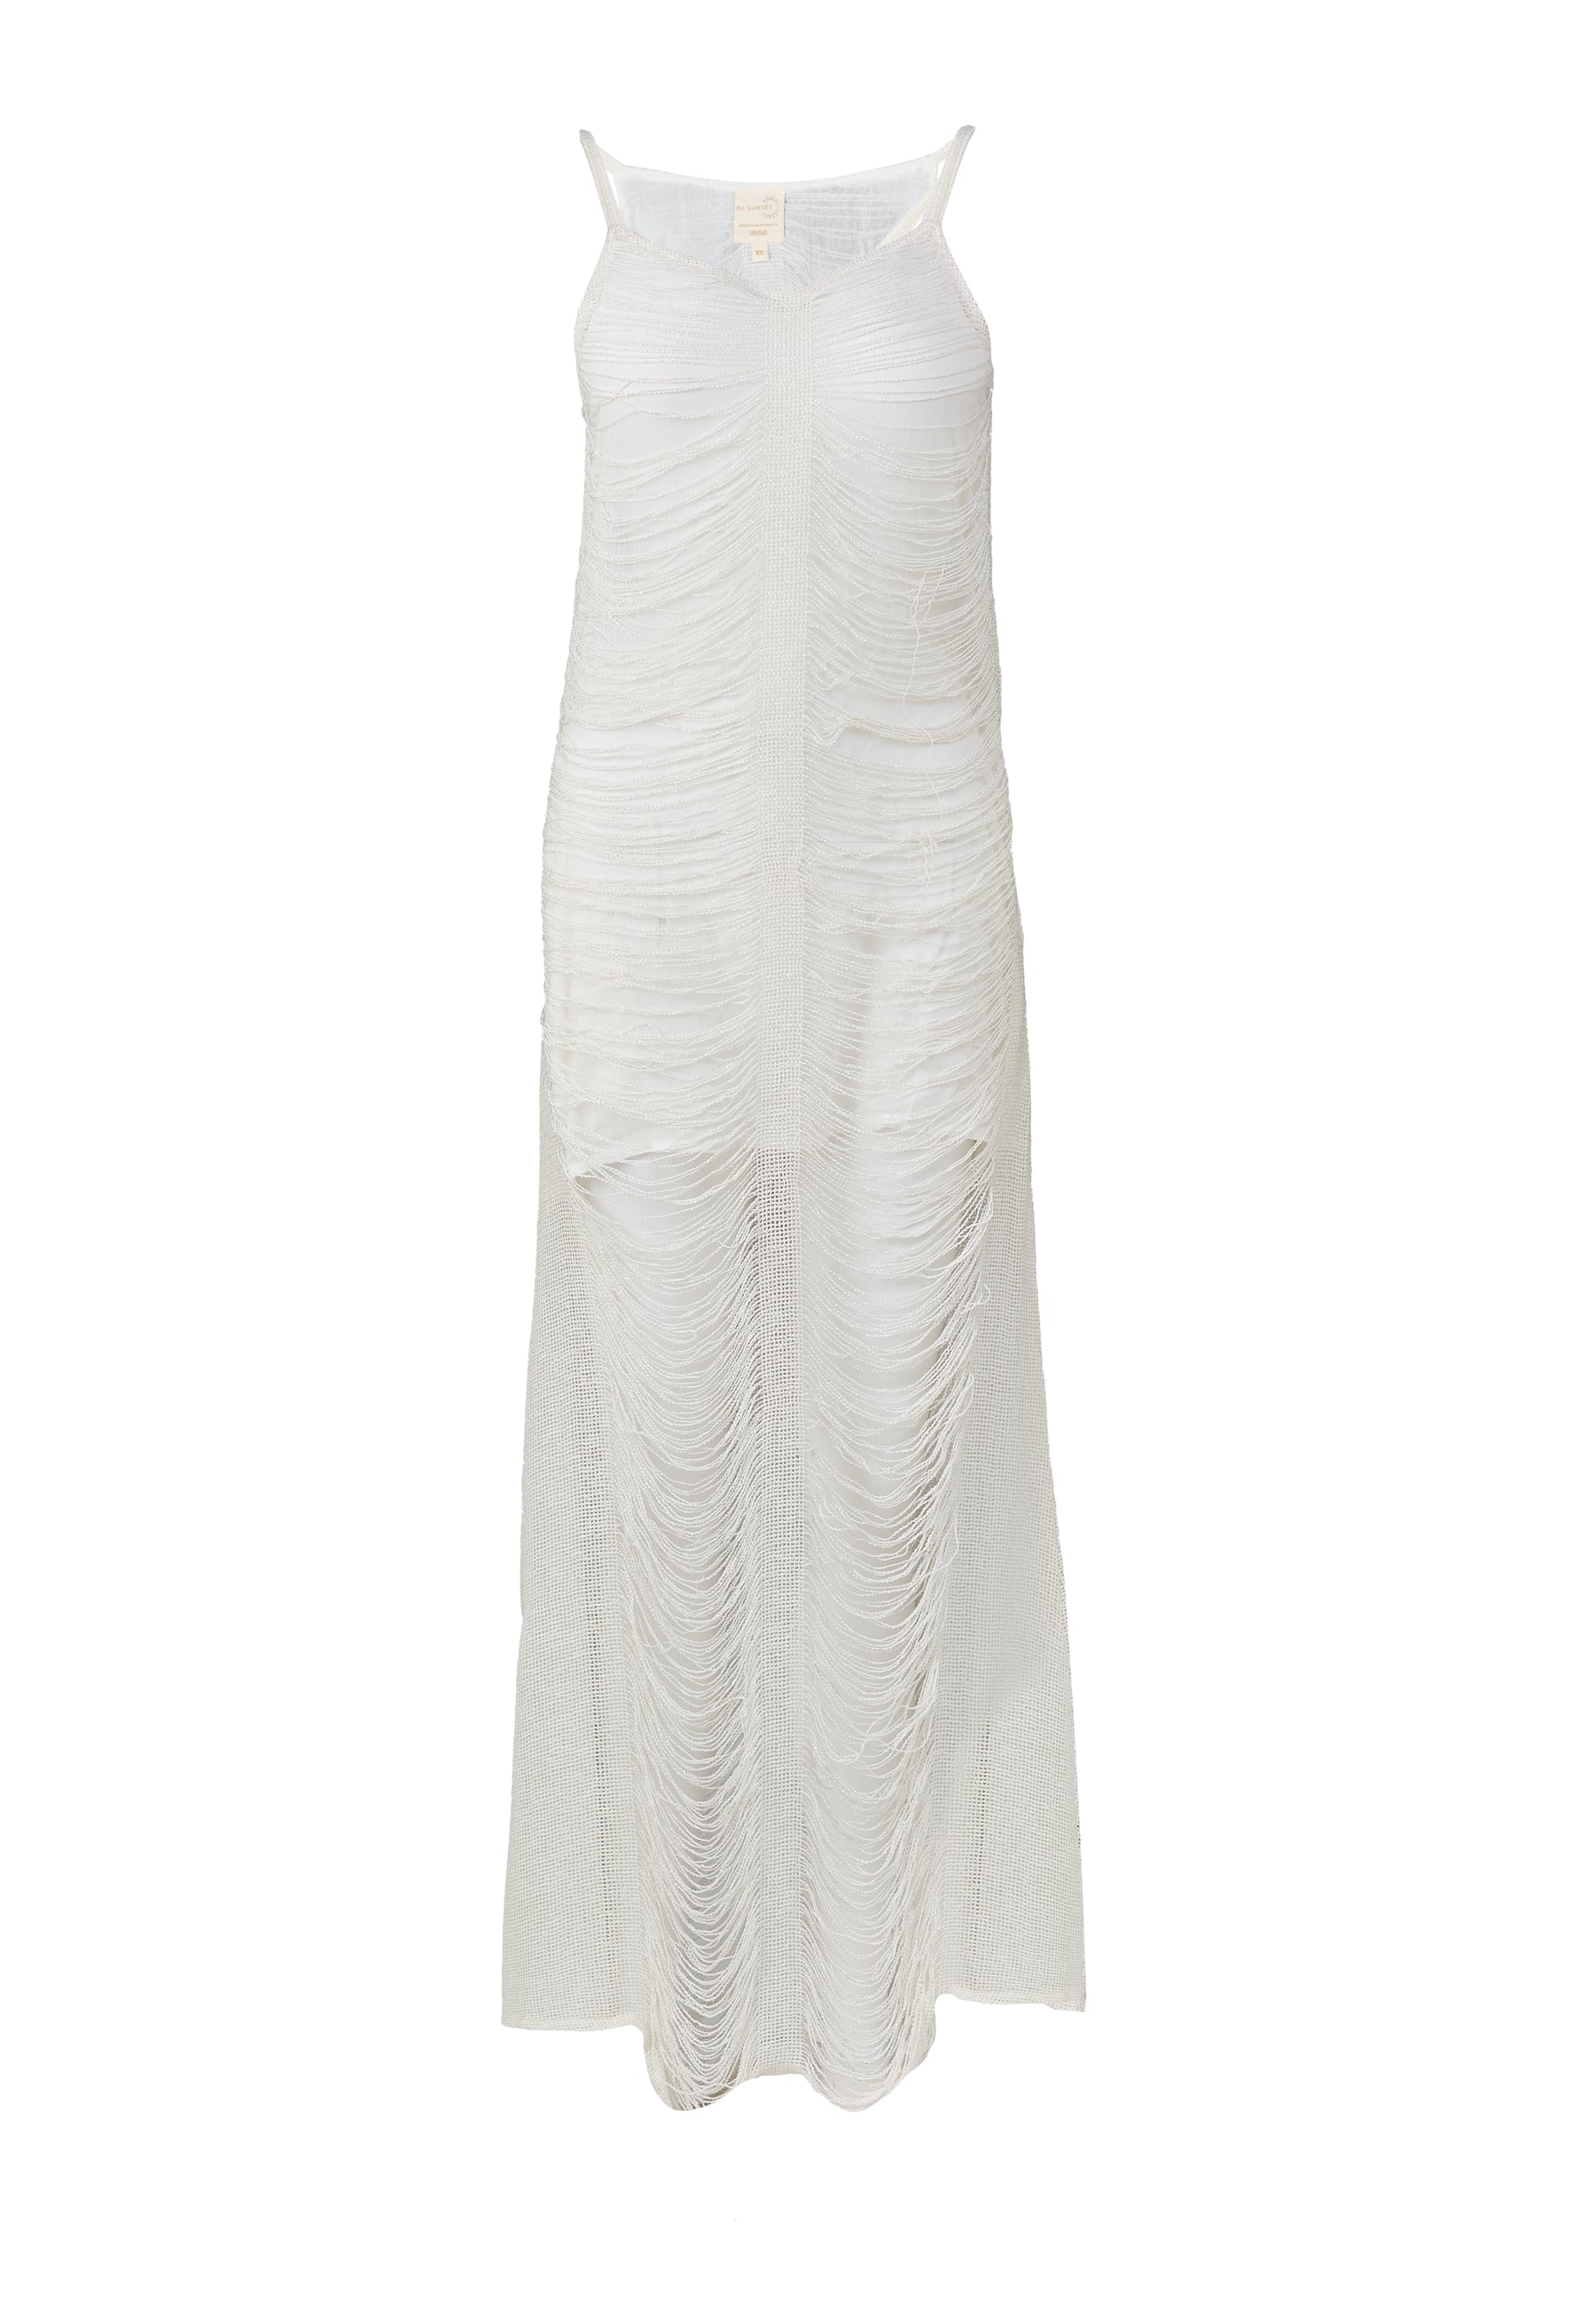 Glimmer White Dress